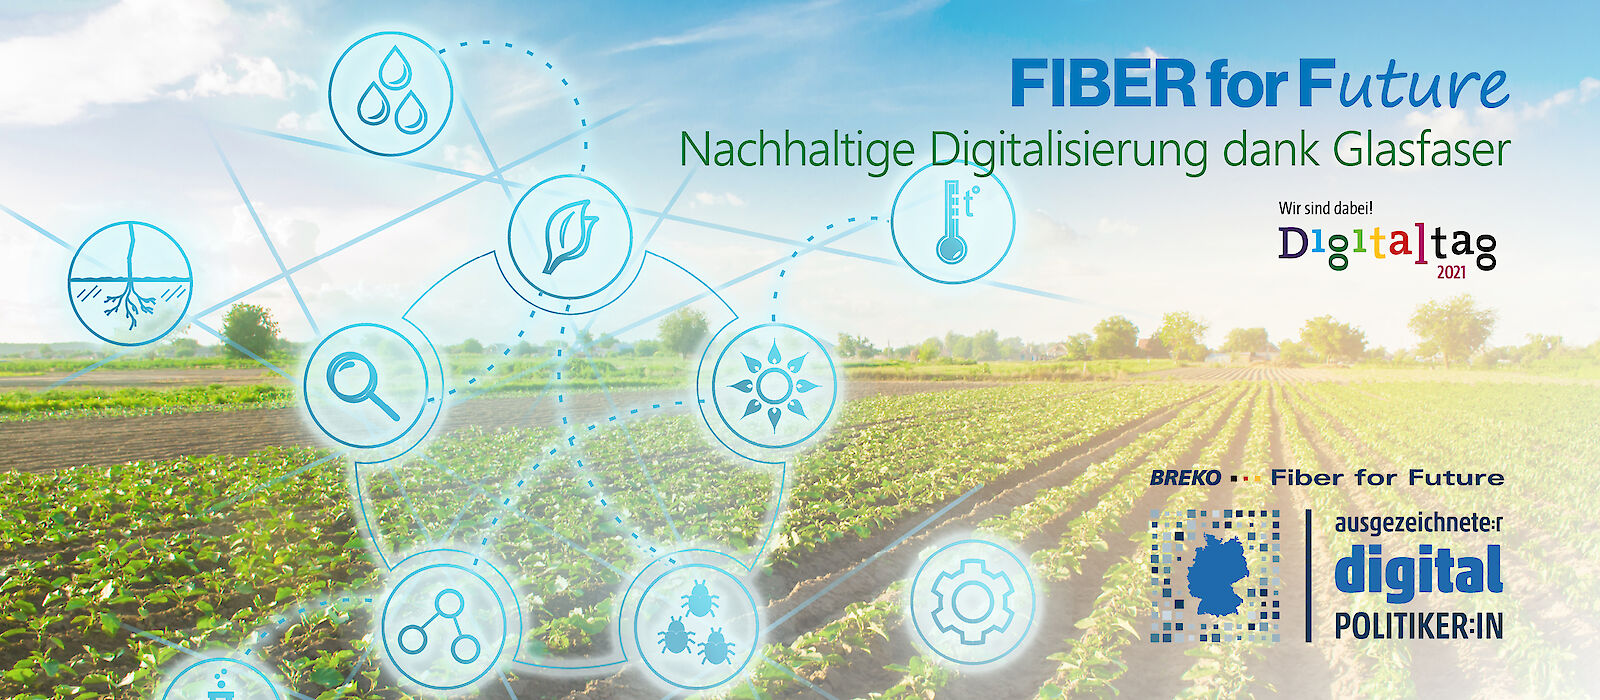 Fiber for Future beim Digitaltag